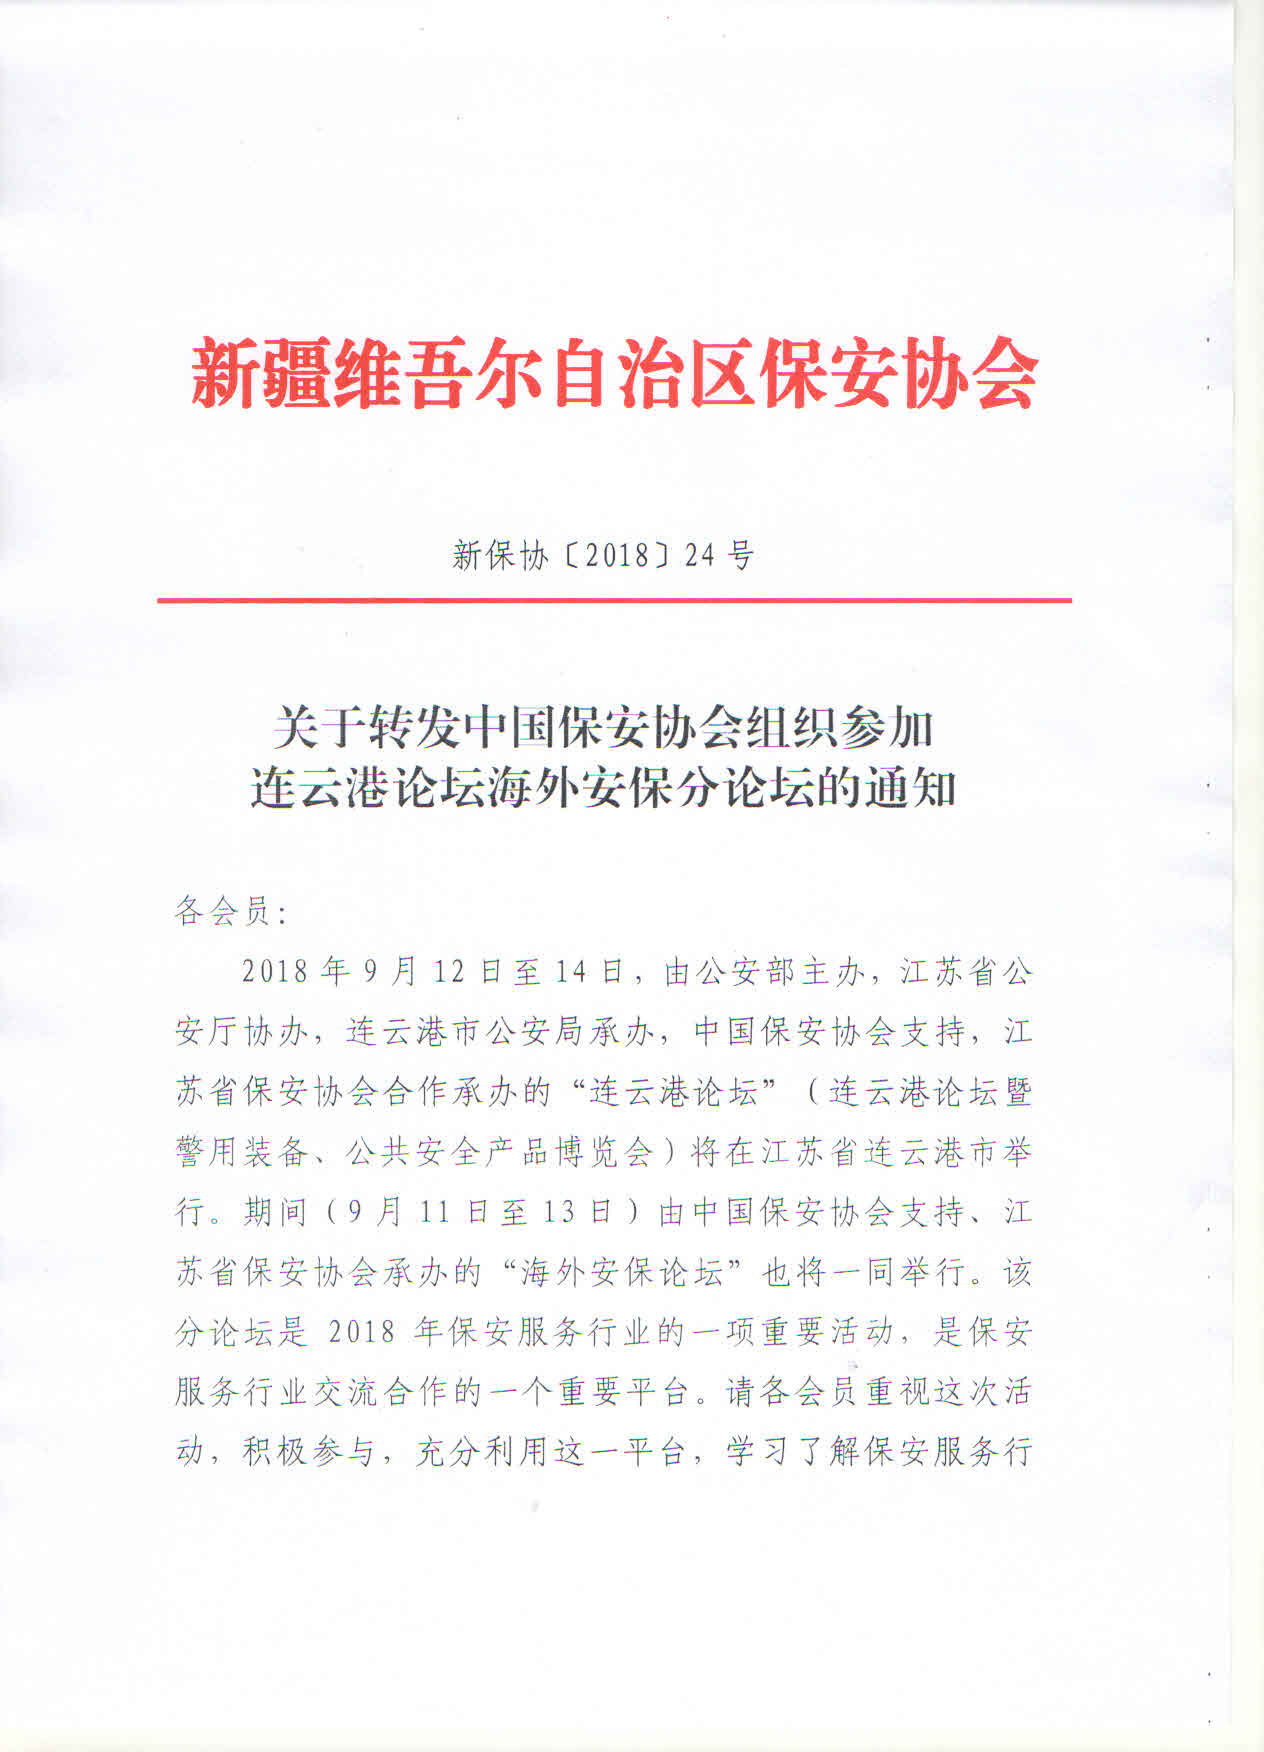 关于转发中国保安协会组织参加连云港论坛海外安保分论坛的通知